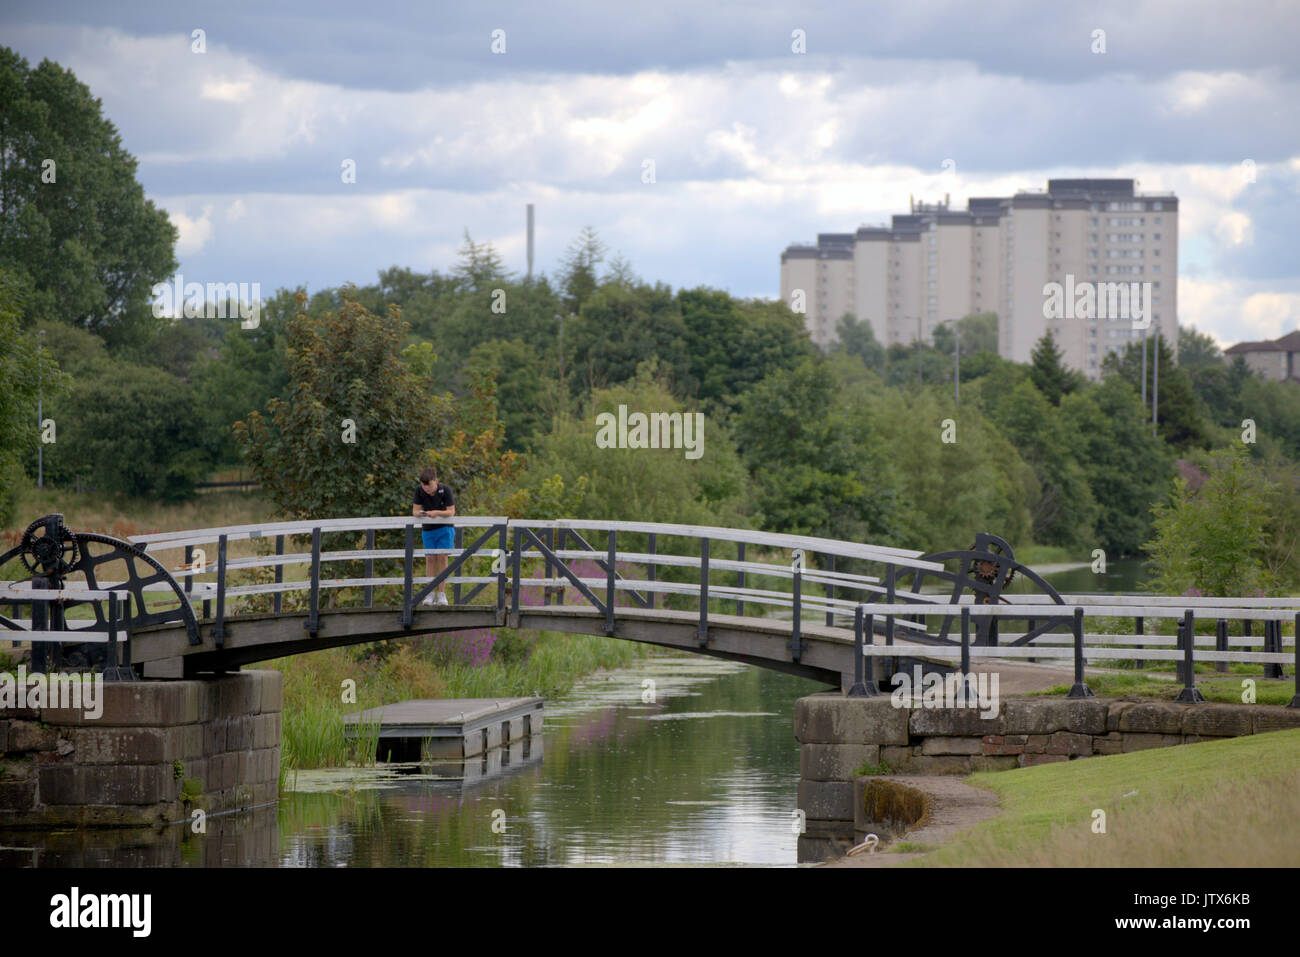 Clydebank, Glasgow Blairdardie highflats im Hintergrund. Junge verwendet Smartphone als Sommer Wetter liefert auf der Forth-and-Clyde-Kanal Brücke Stockfoto